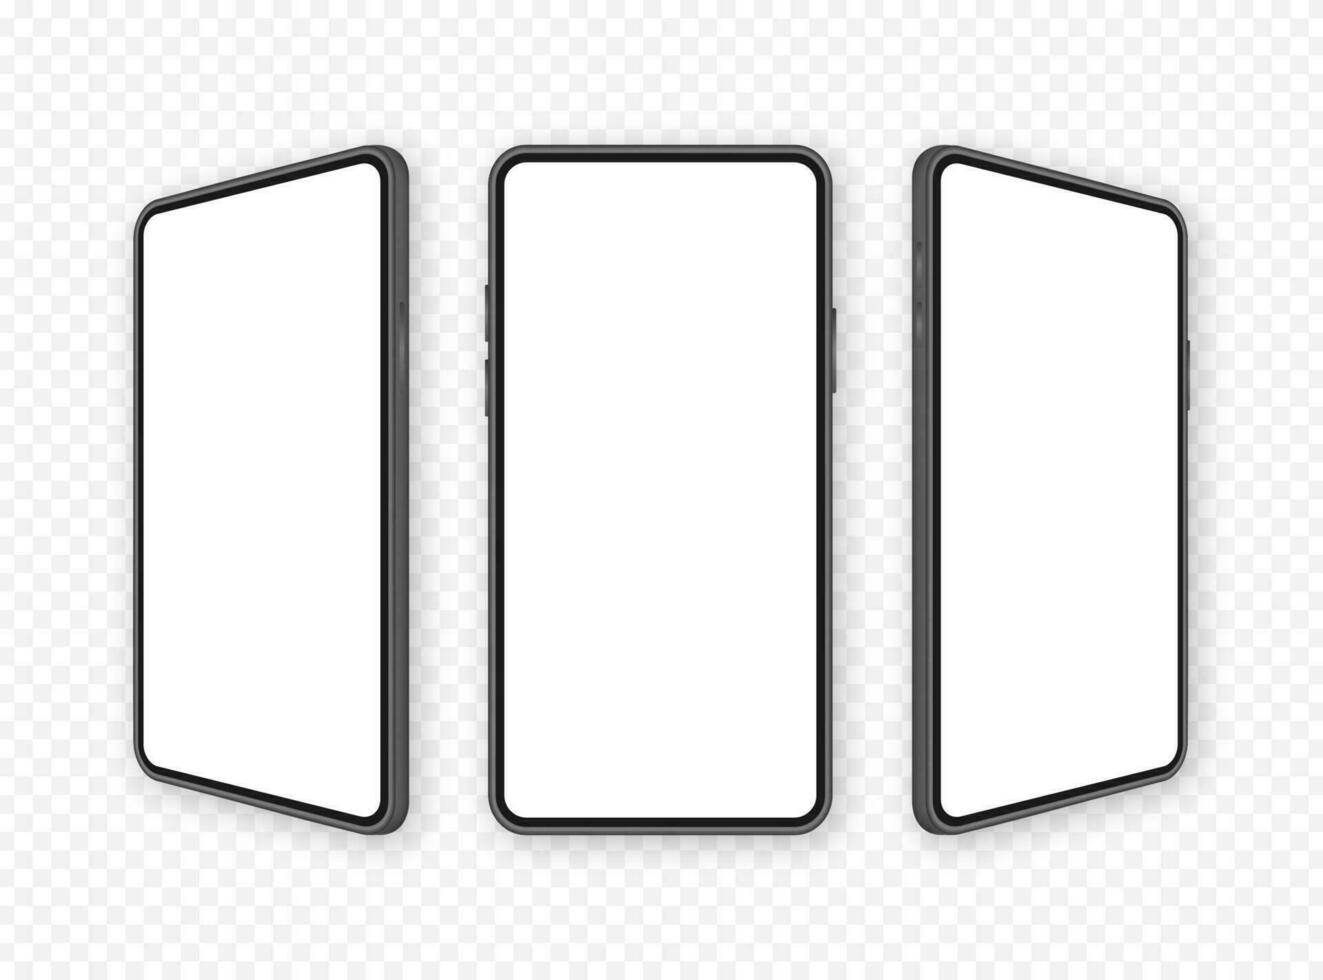 icona con mobile ui e UX design su rosso sfondo per ragnatela design. App interfaccia modello. vettore